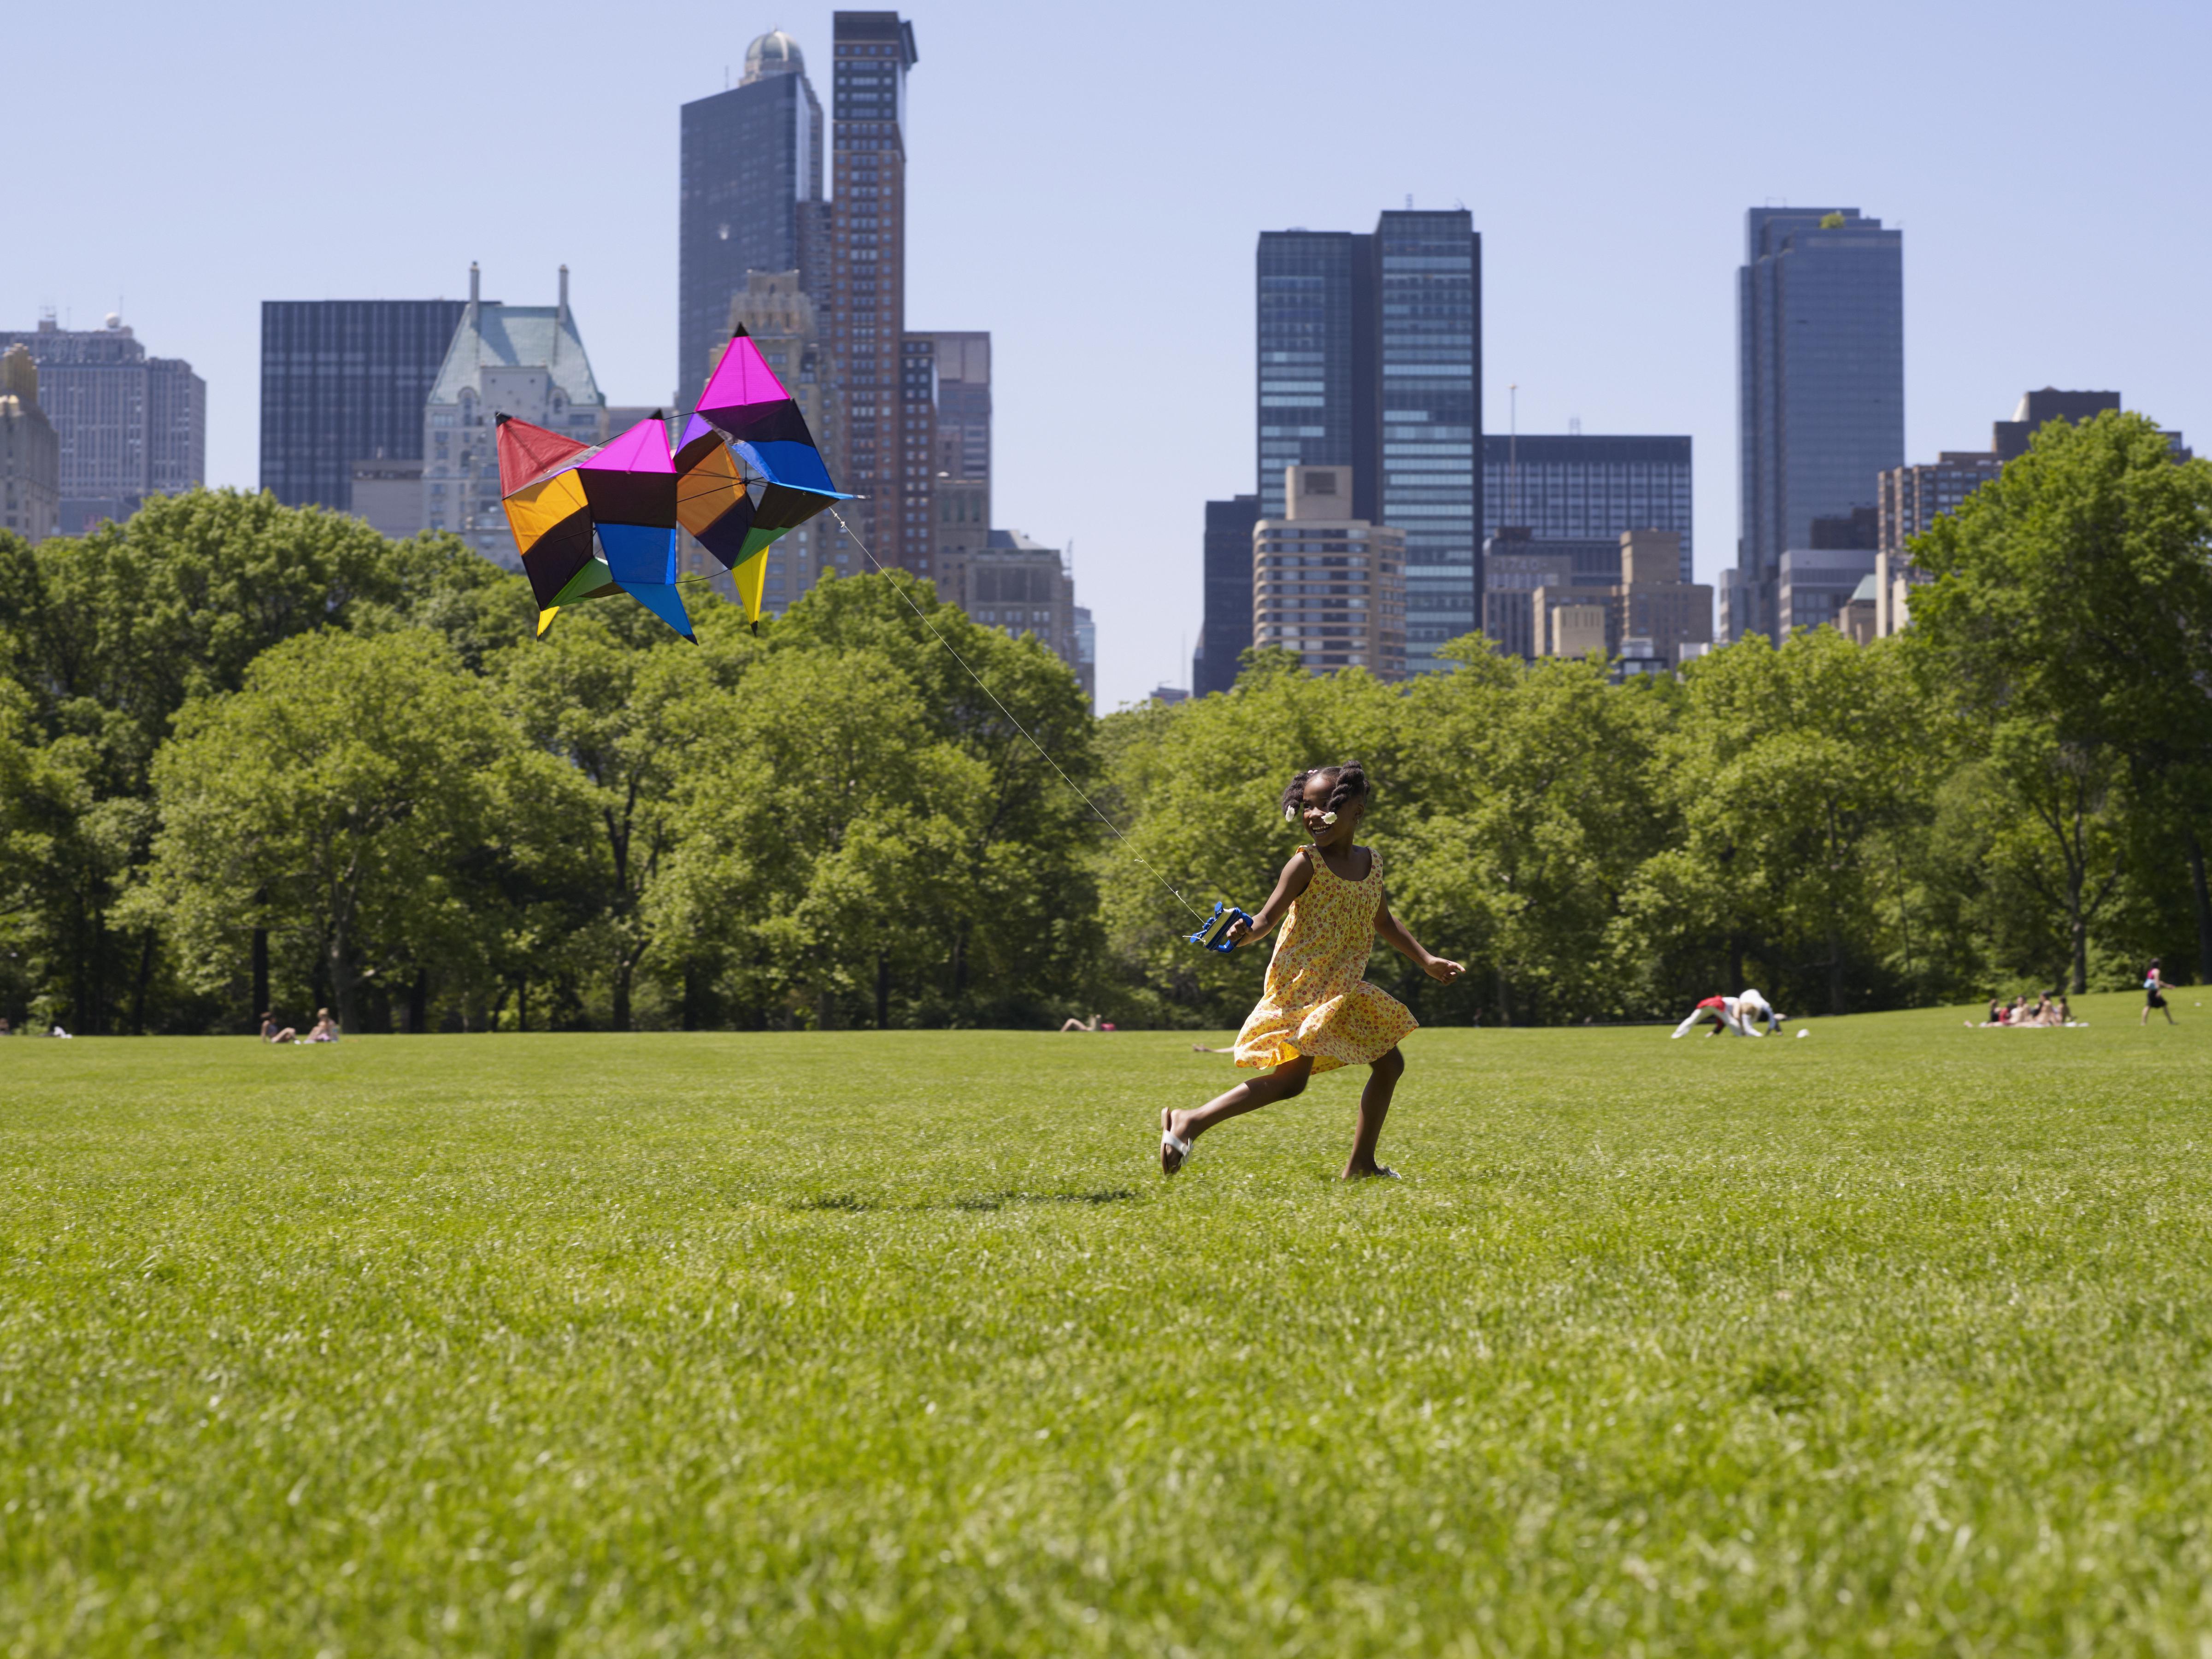 African girl flying kite in park